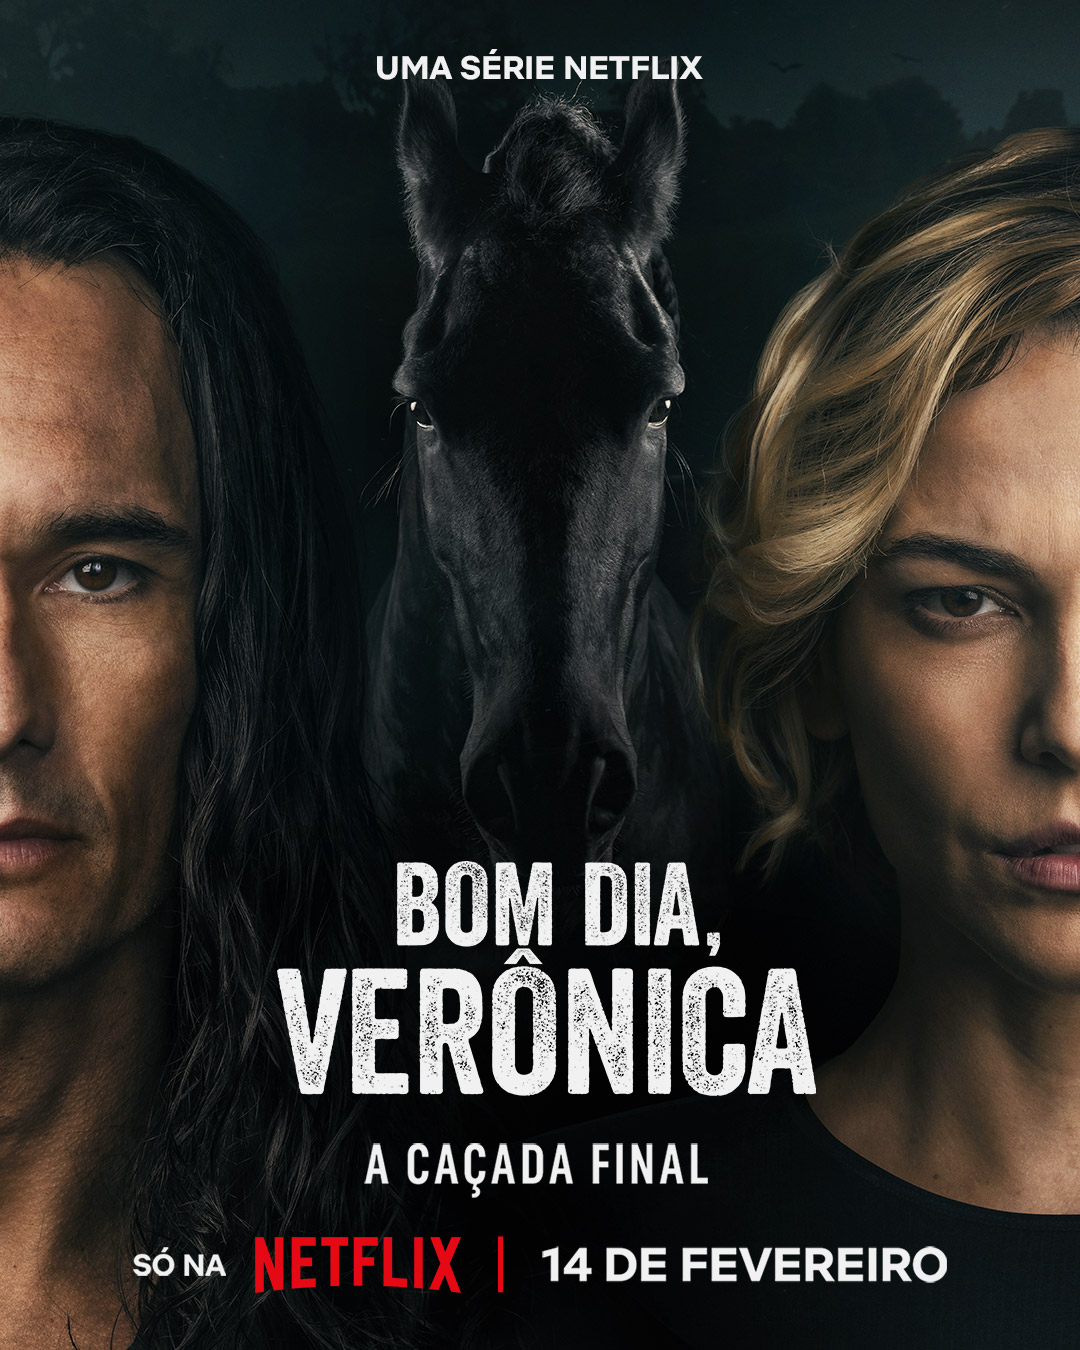 3ª temporada de Bom Dia, Verônica encerra a saga de forma poderosa e  recheada de grandes atuações - Folha PE